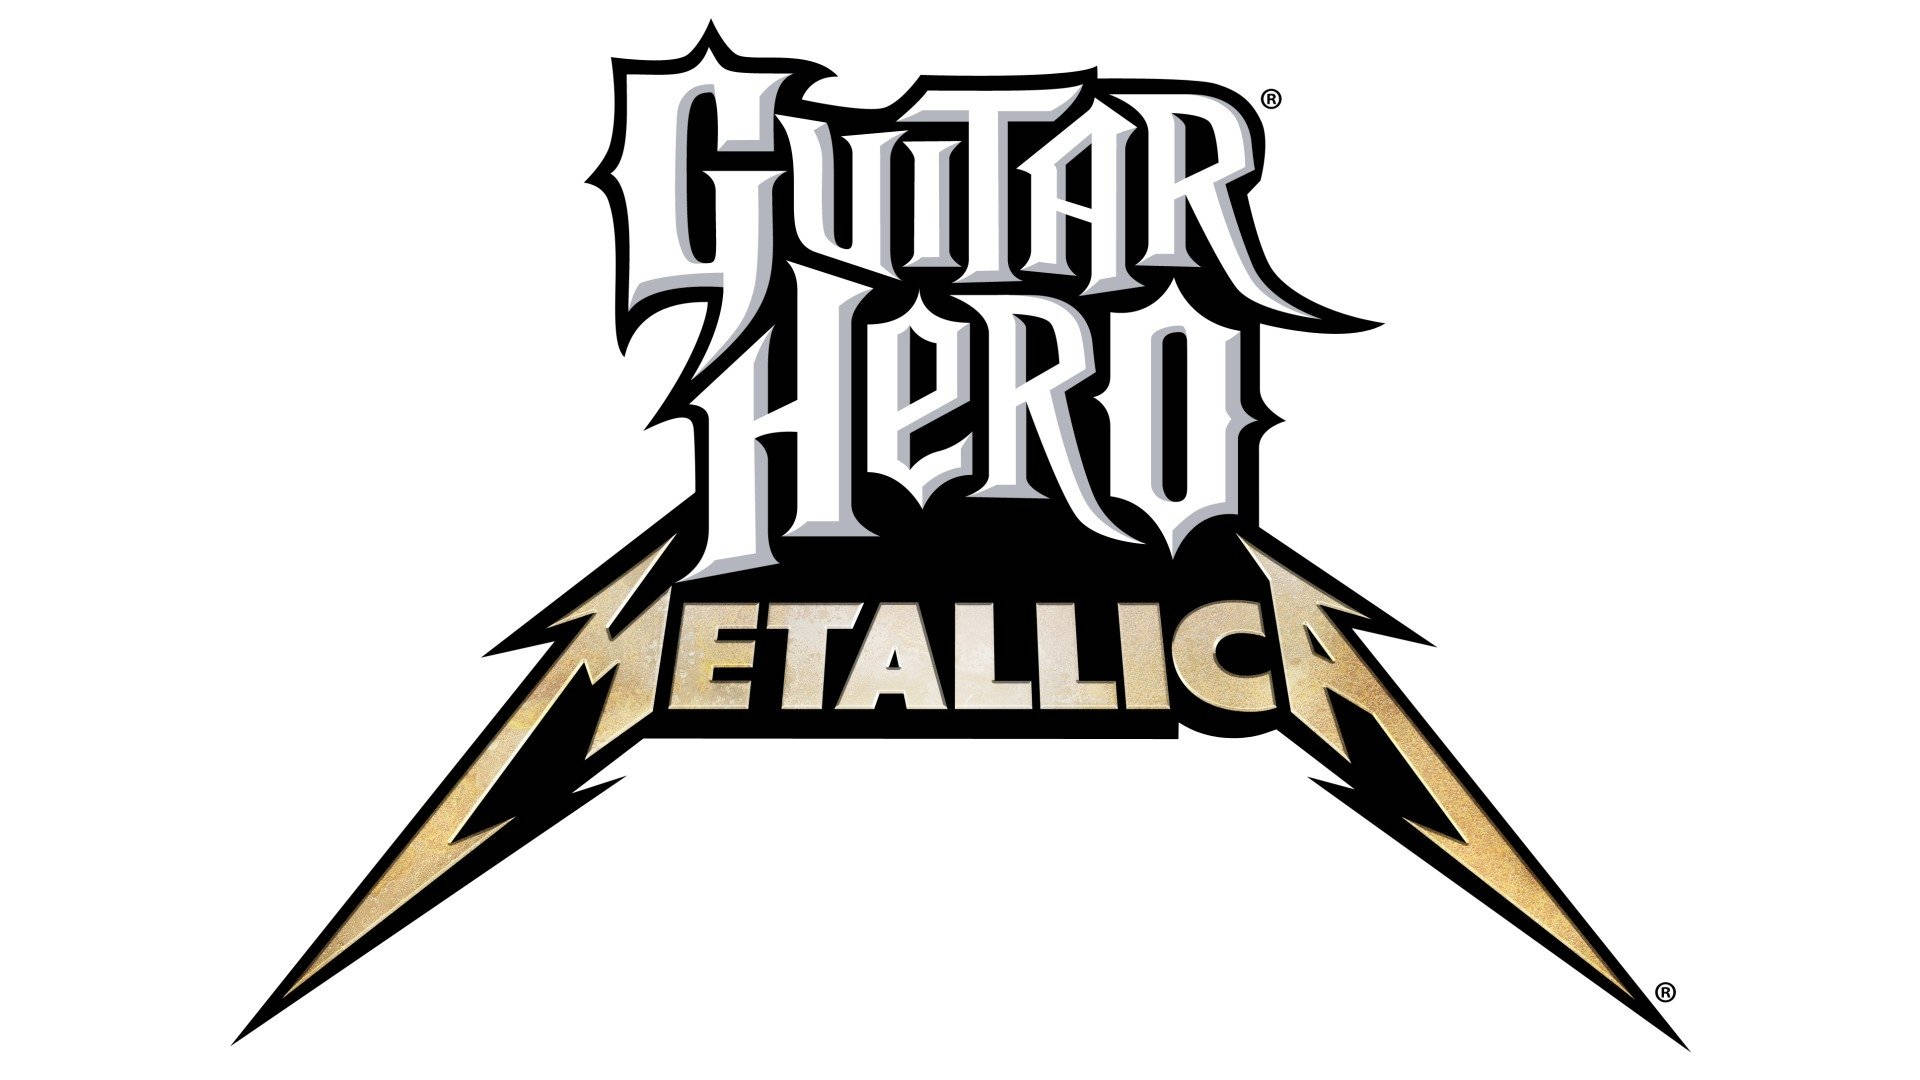 Free Guitar Hero Wallpaper Downloads, [100+] Guitar Hero Wallpapers for  FREE 